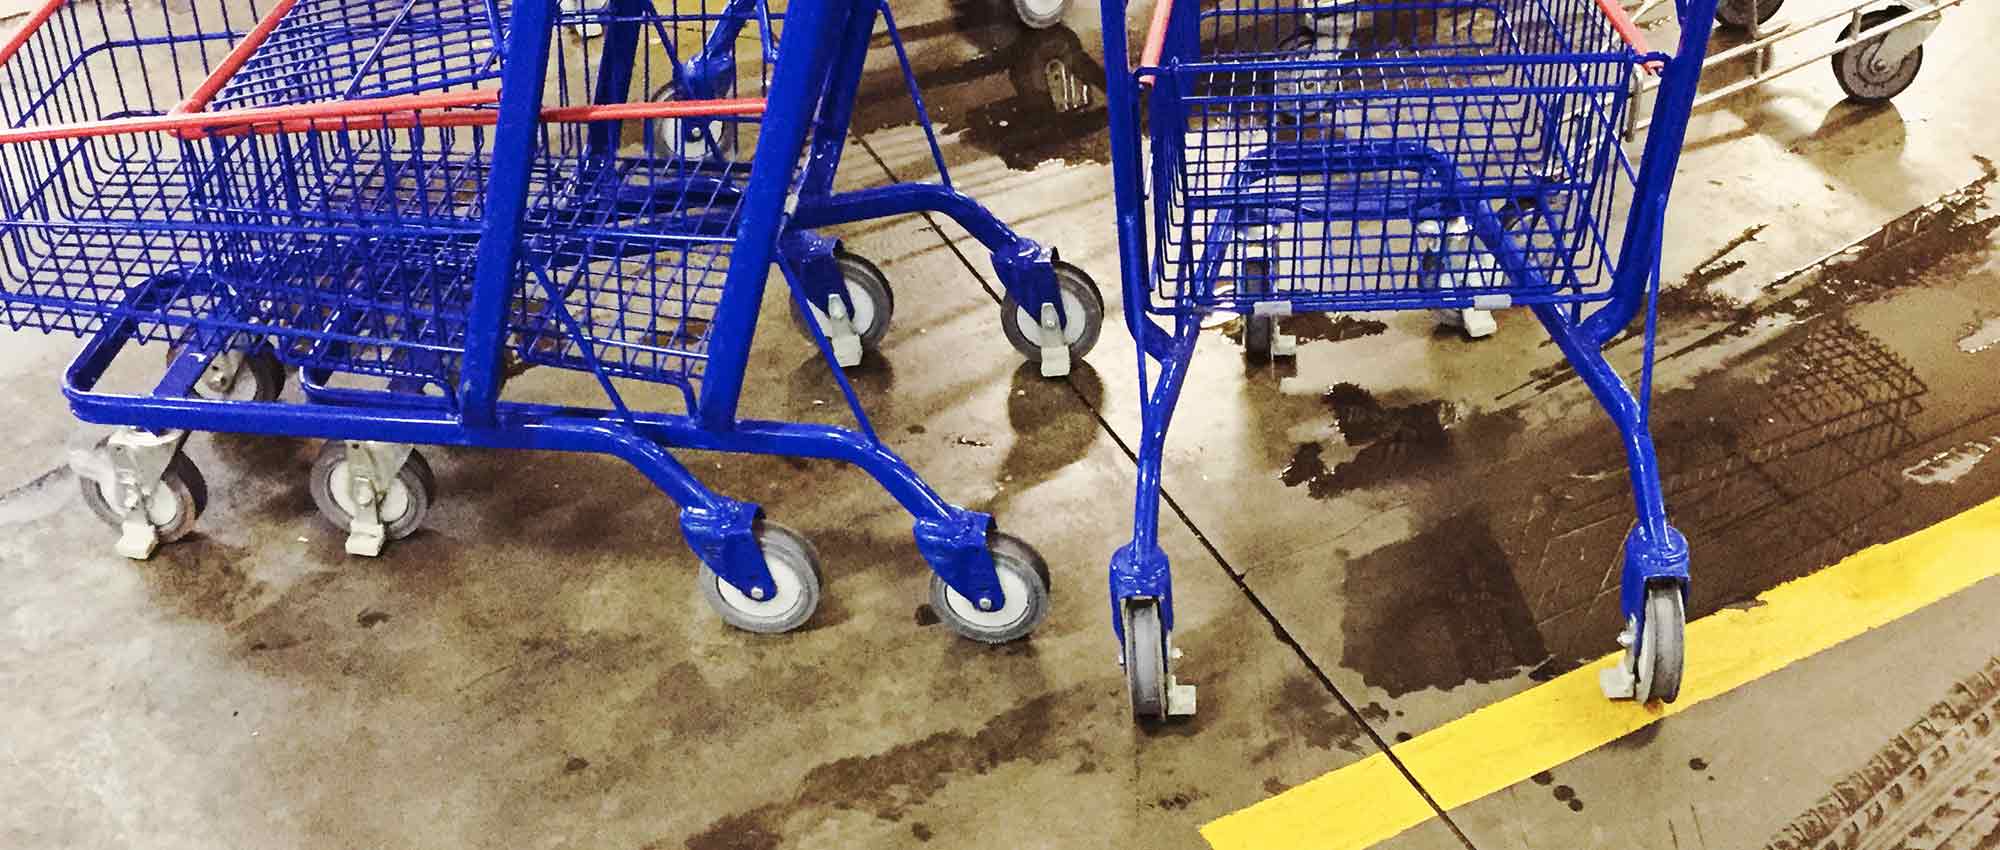 Supermarket floor is wet in the carts area.